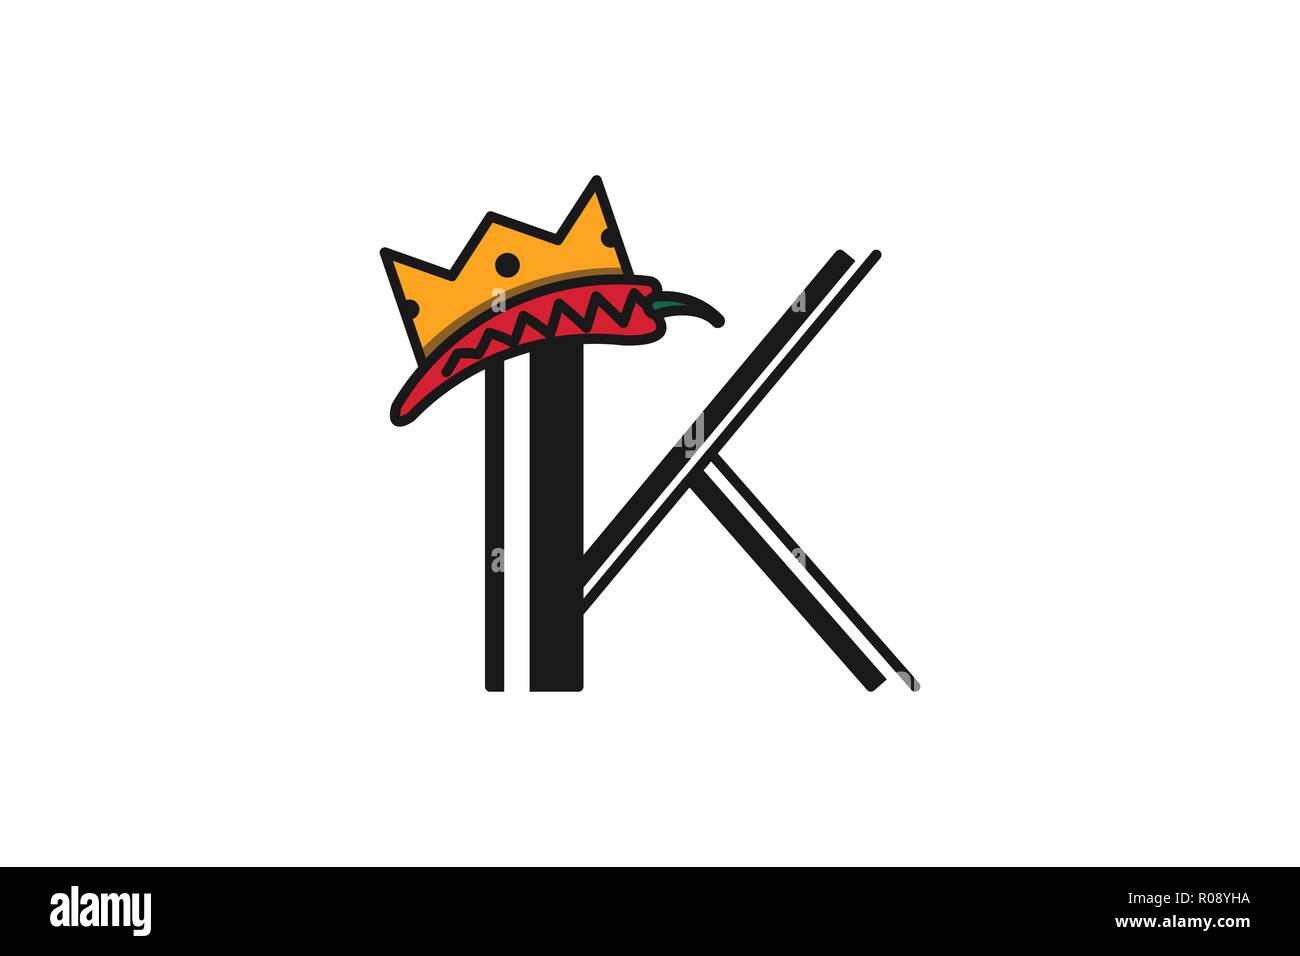 Buchstabe K und Krone, König, Königin Logo Designs Inspiration isoliert auf weißem Hintergrund Stock Vektor